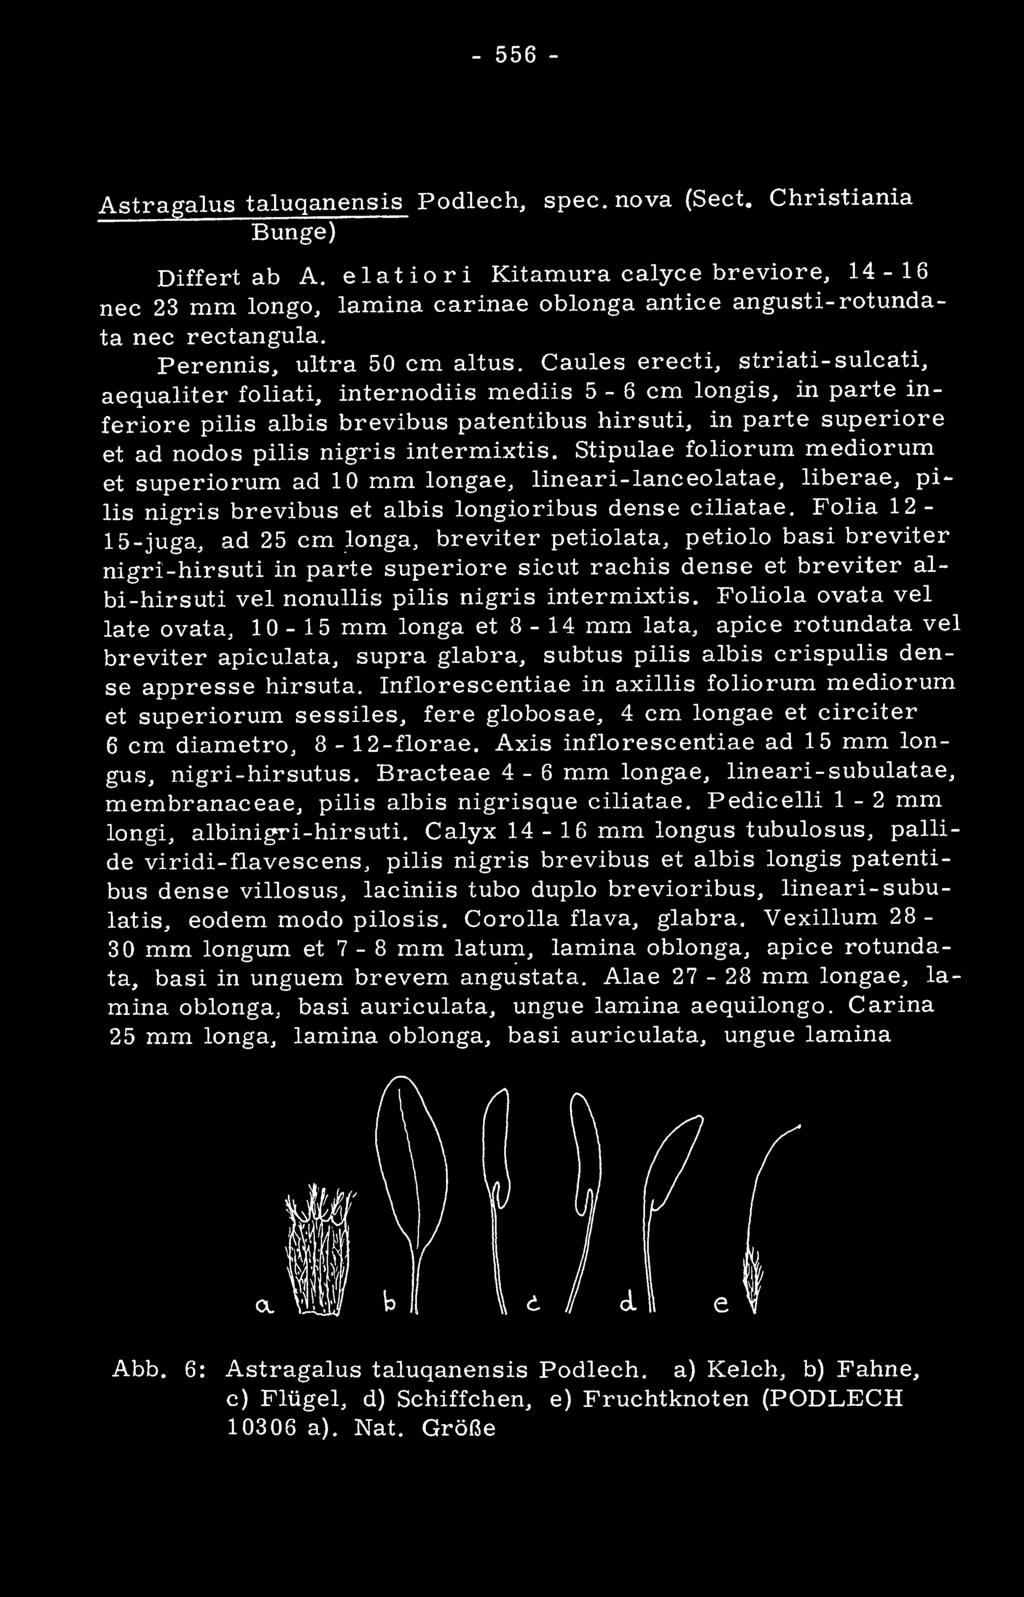 Gaules erecti, striati-sulcati, aequaliter foliati, internodiis mediis 5-6 cm longis, in parte inferiore pilis albis brevibus patentibus hirsuti, in parte superiore et ad nodos pilis nigris